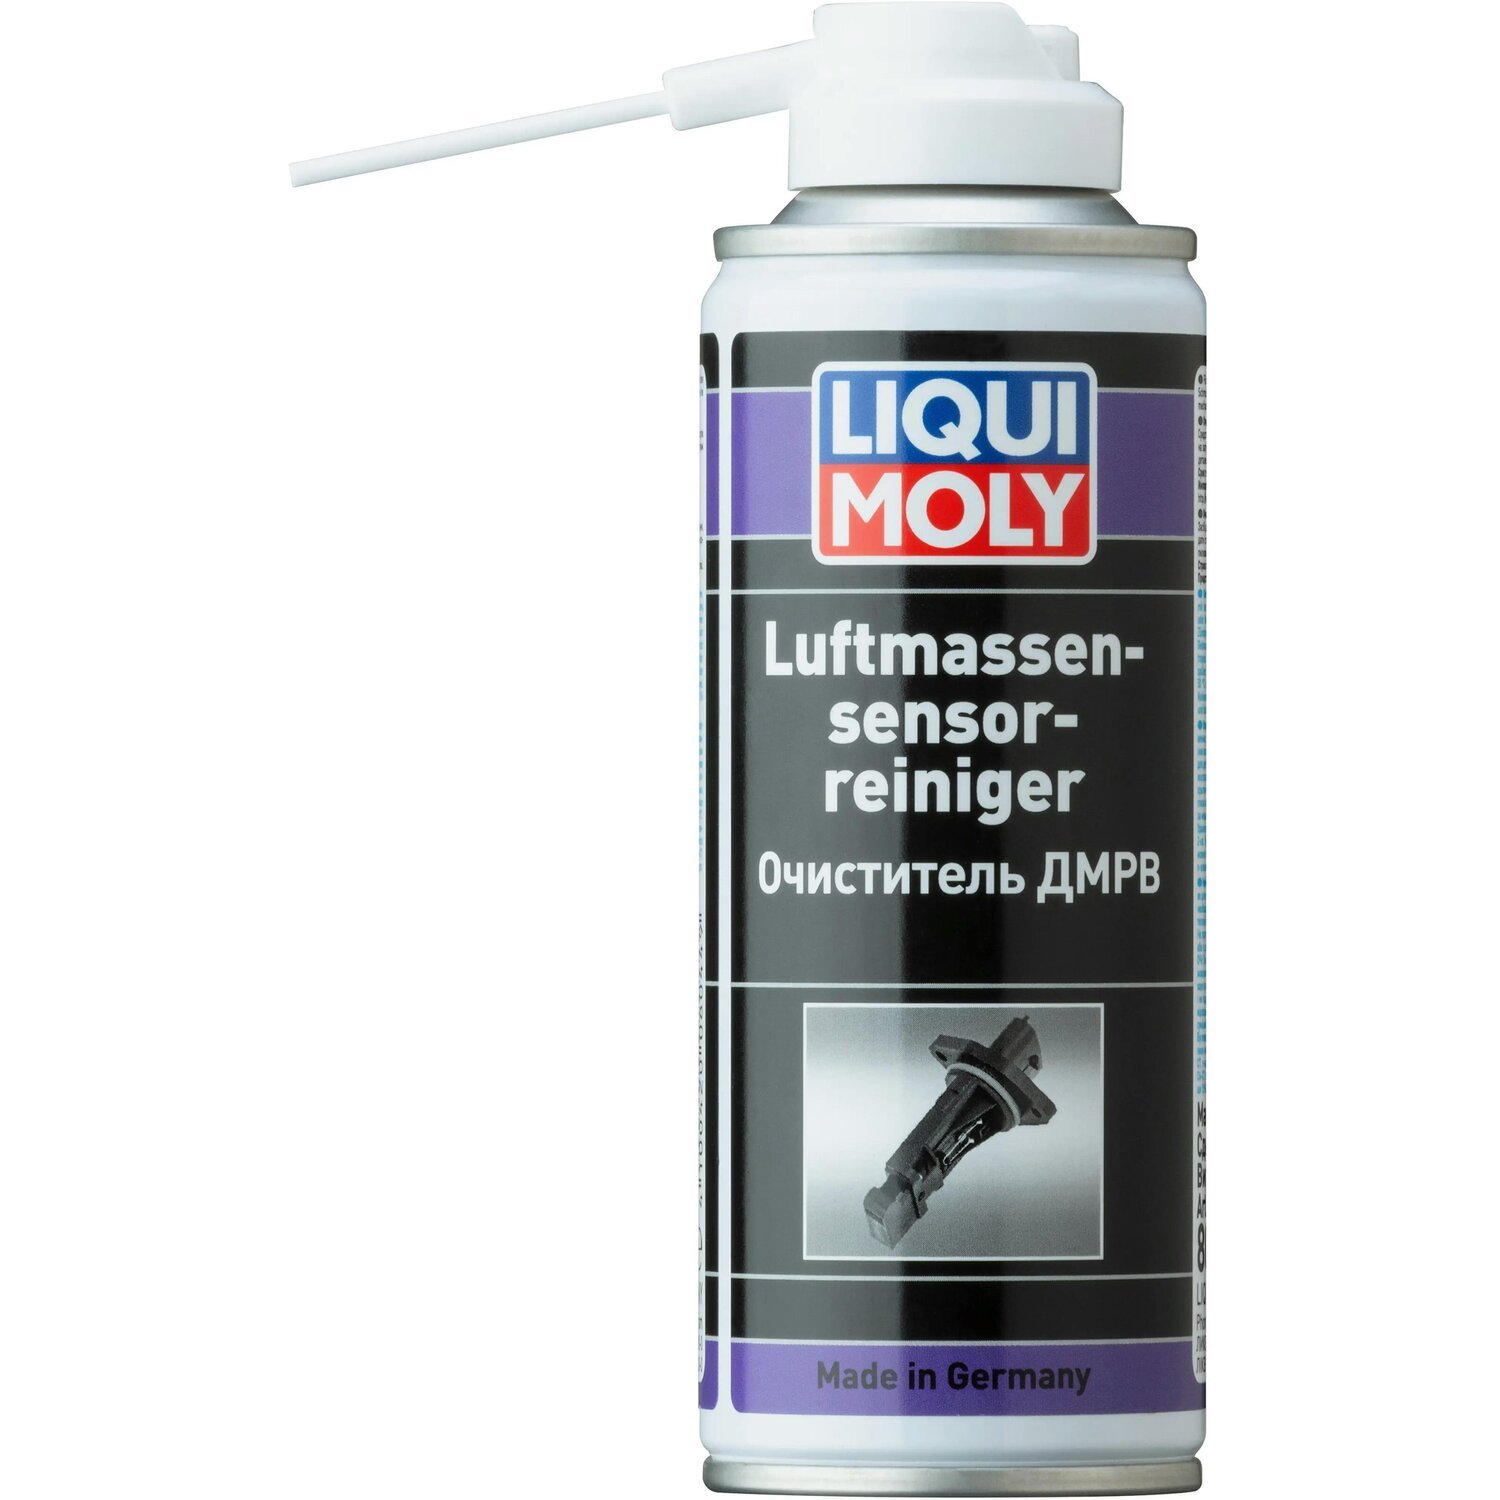 Очиститель Liqui Moly для ДМРВ Luftmassensensor-Reiniger 0,2л (4100420080449) фото 